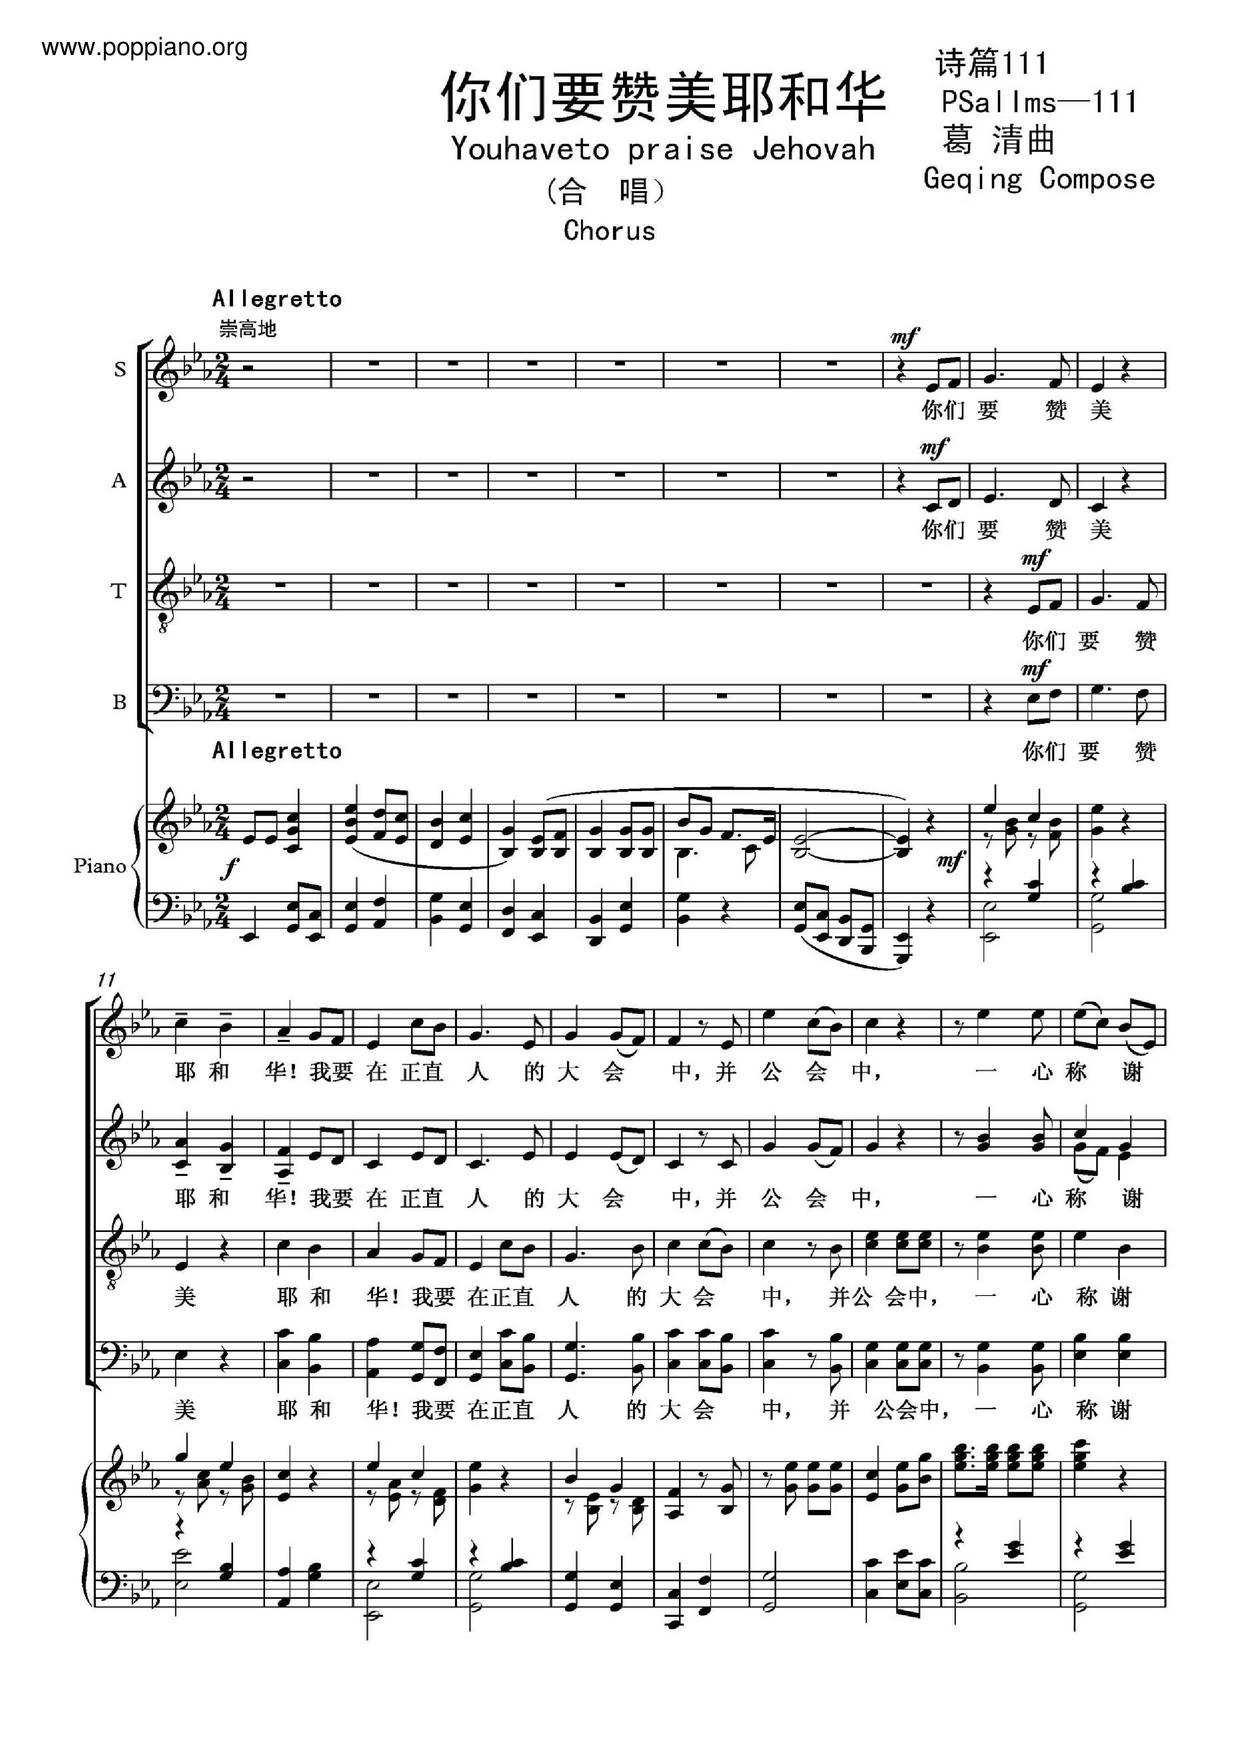 诗歌 你们要赞美耶和华琴谱 五线谱pdf 香港流行钢琴协会琴谱下载